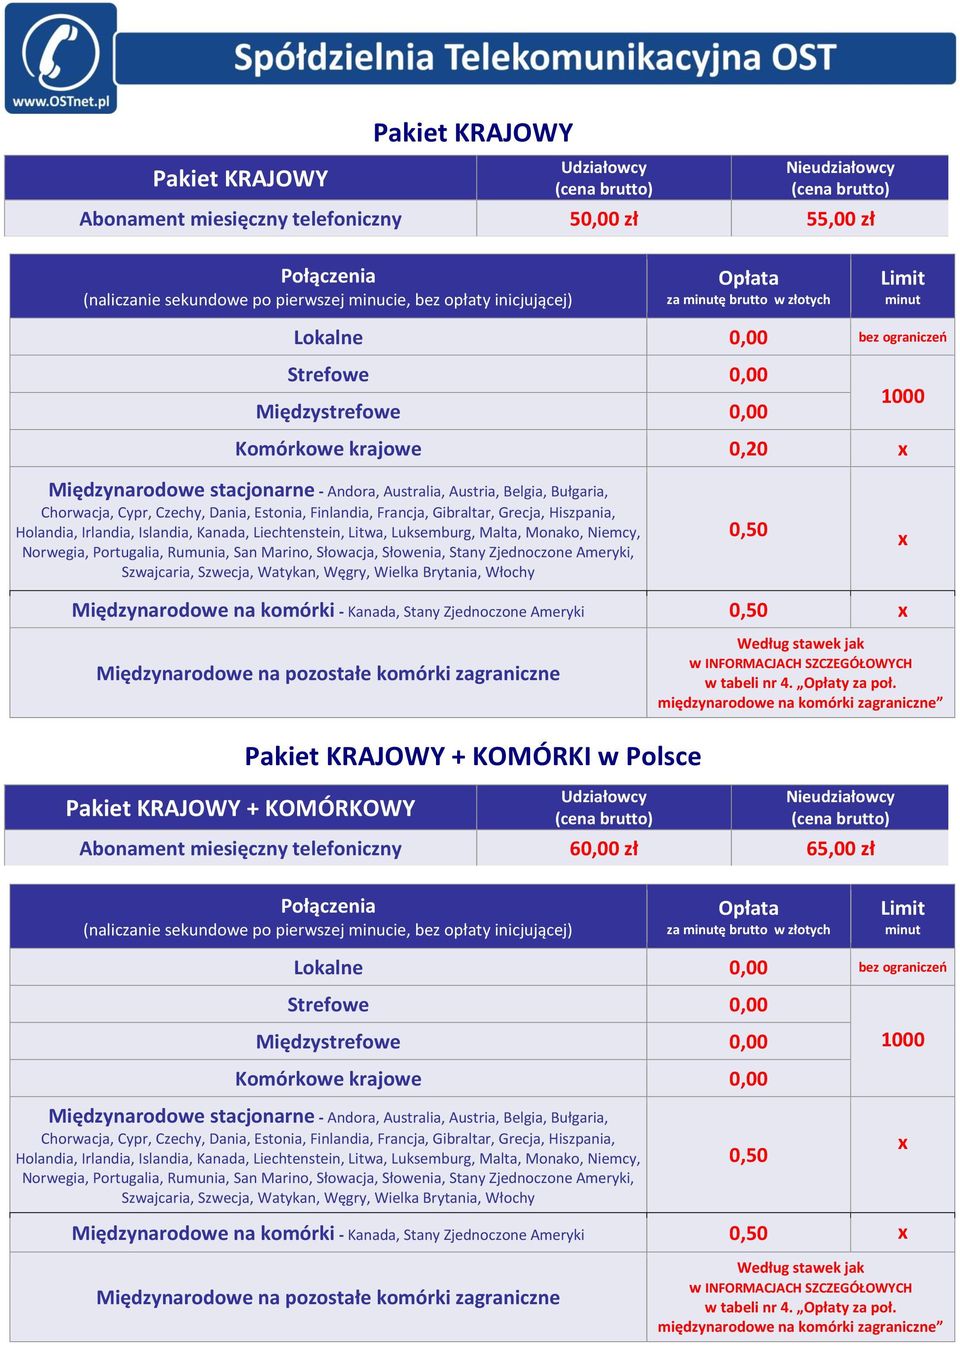 KRAJOWY + KOMÓRKOWY Pakiet KRAJOWY + KOMÓRKI w Polsce Abonament miesięczny telefoniczny 60,00 zł 65,00 zł Strefowe